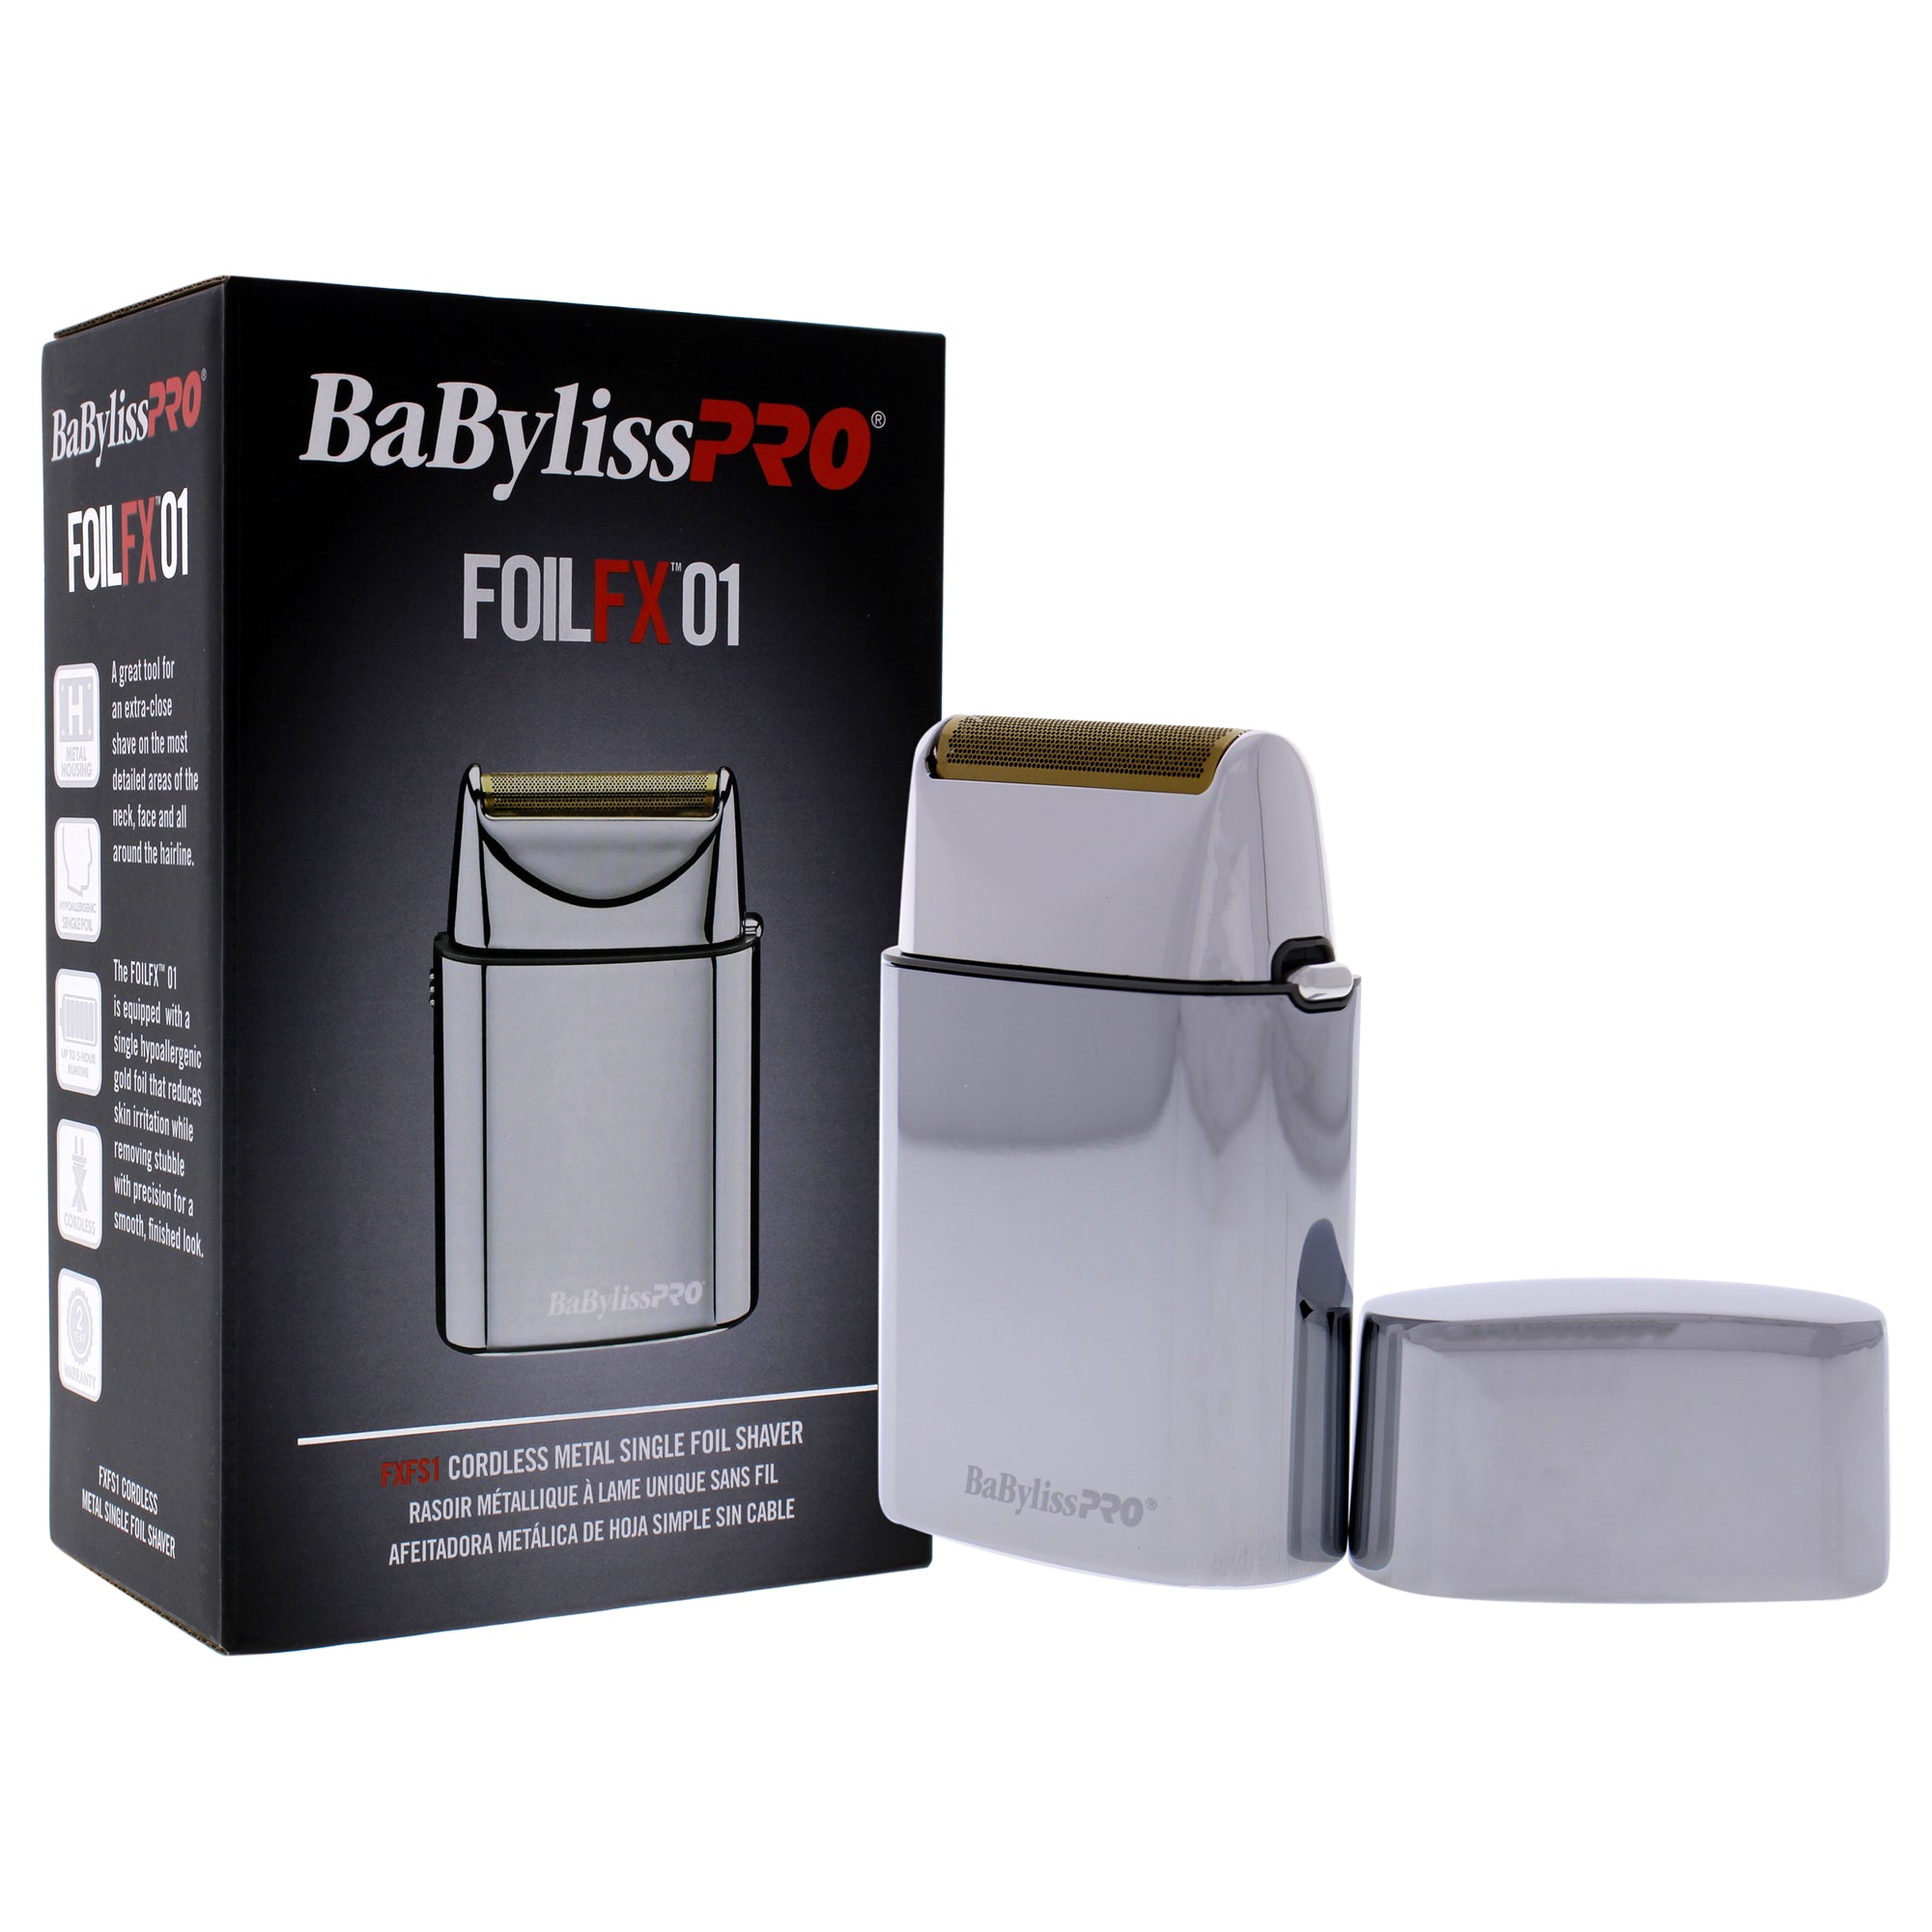 BaBylissPRO? FOILFX01? Cordless Metal Single Foil FXFS1